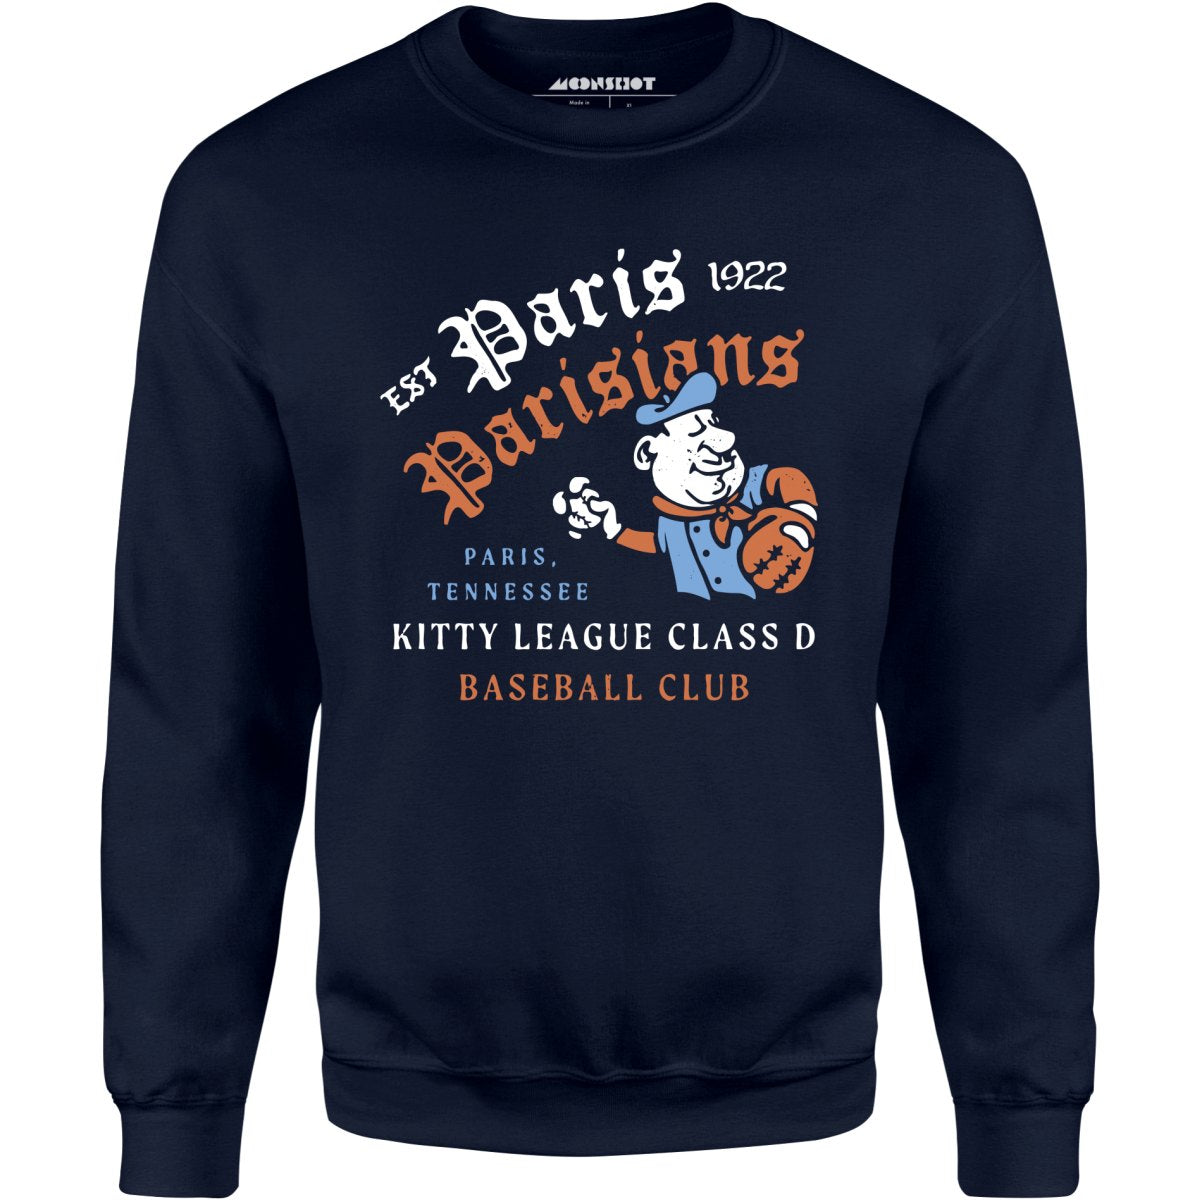 Paris Parisians - Tennessee - Vintage Defunct Baseball Teams - Unisex Sweatshirt